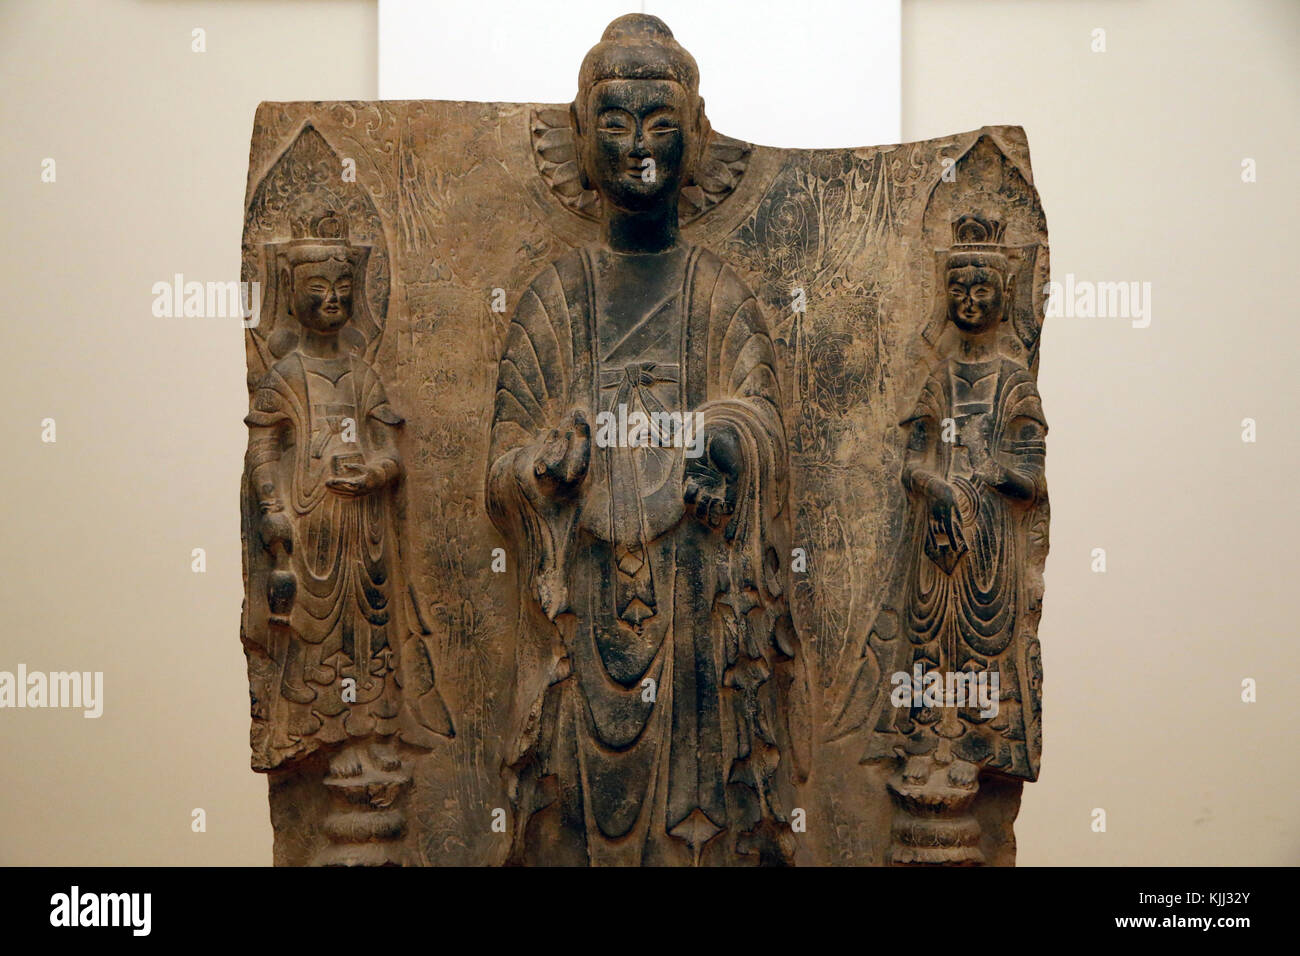 Museo Nazionale di Arte Orientale, Roma. Calco in gesso di stele cinese raffigurante il buddha delle Nazioni Unite e a causa boddhisatva. Originale in pietra risalente alla norma DIN Foto Stock